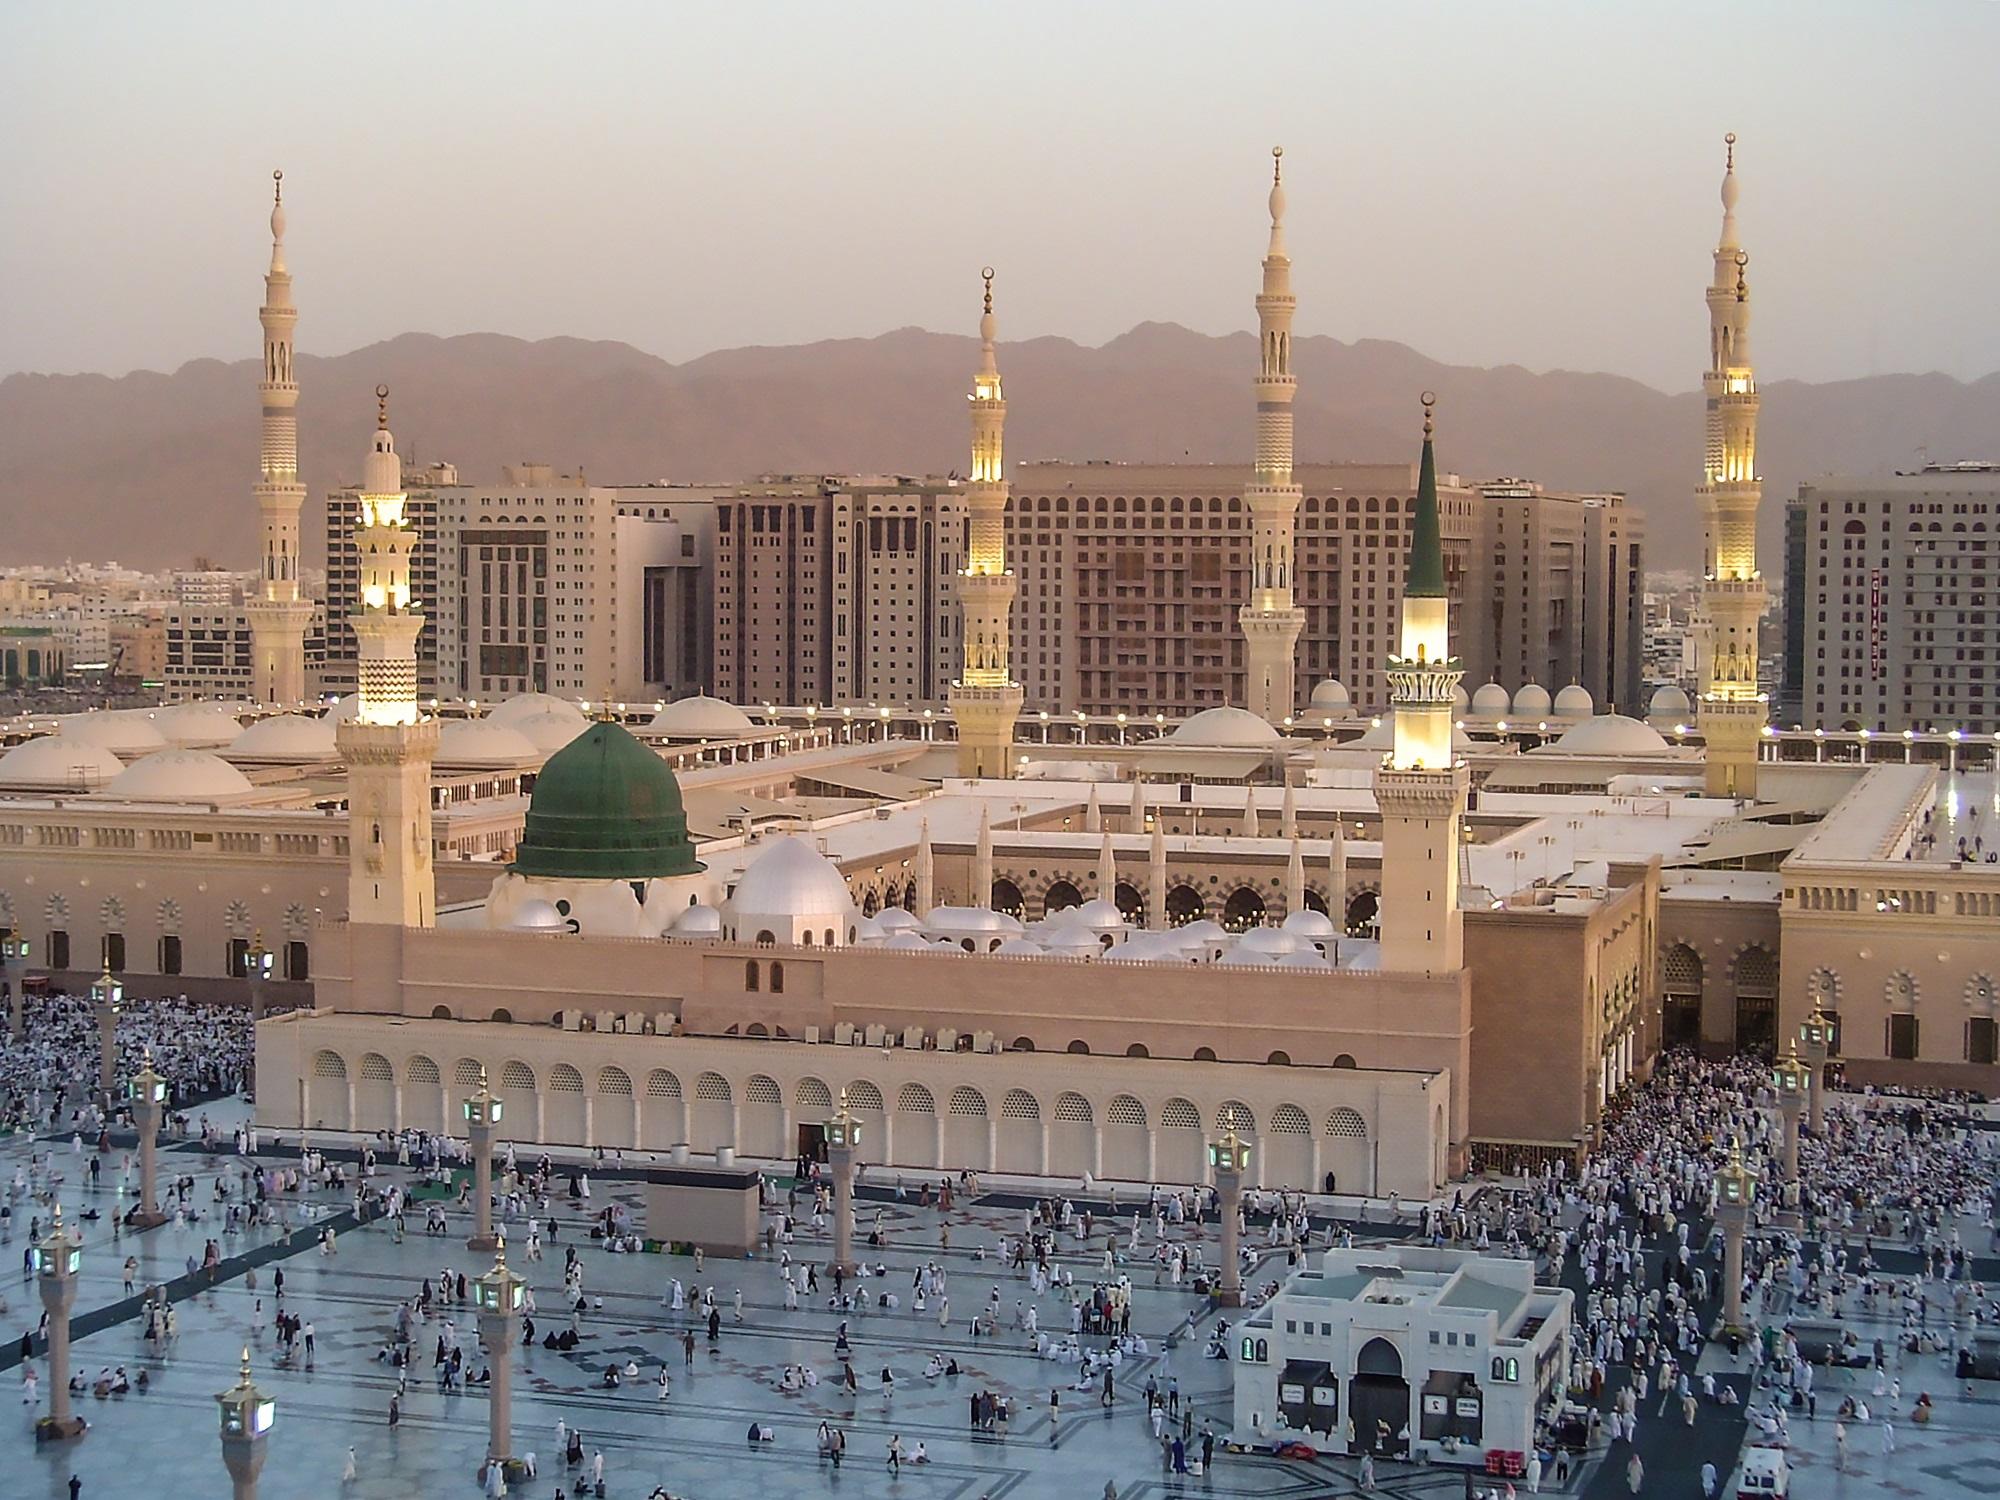 المسجد النبوي في المدينة المنورة في المملكة العربية السعودية. (Shutterstock)